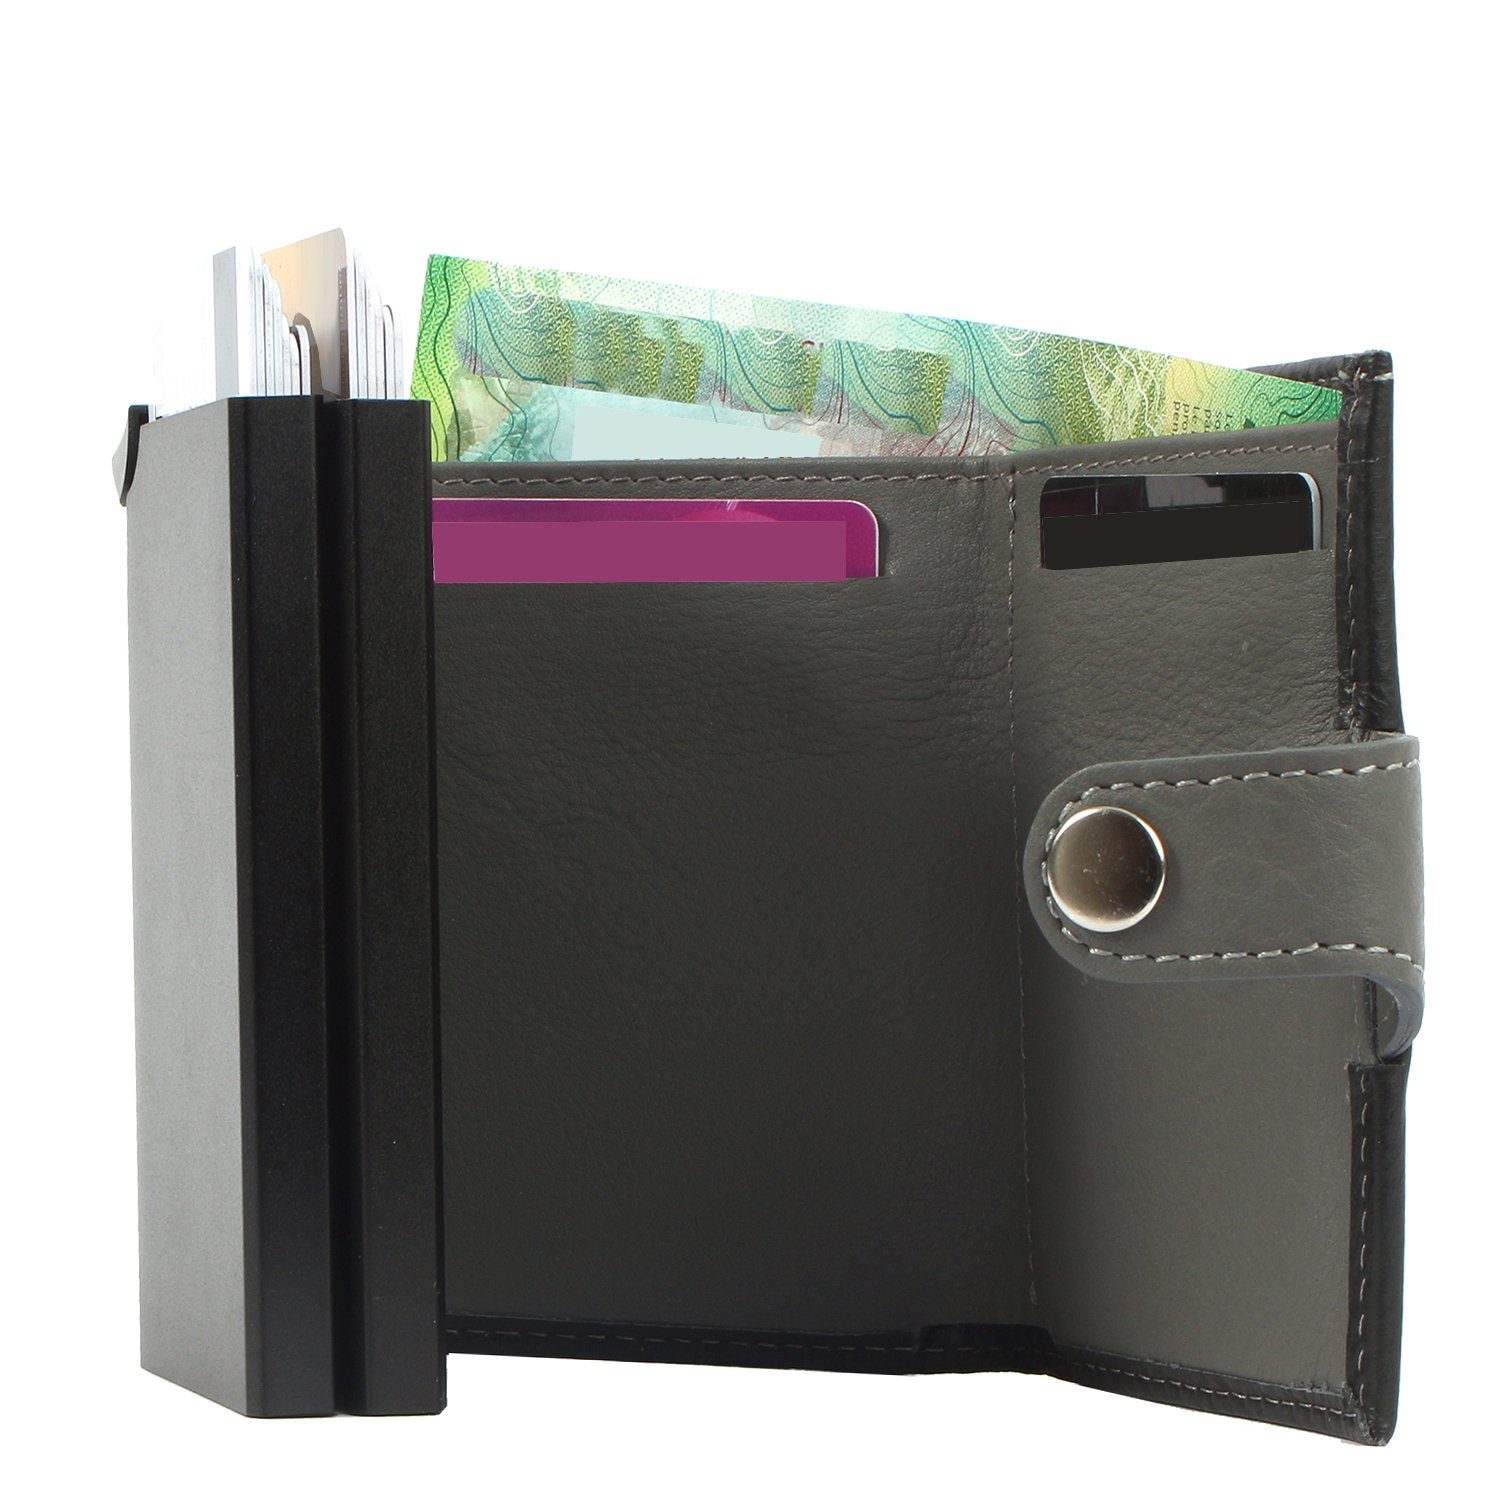 Mini aus Margelisch Geldbörse leather, Upcycling Leder darkbrown noonyu Kreditkartenbörse double RFID